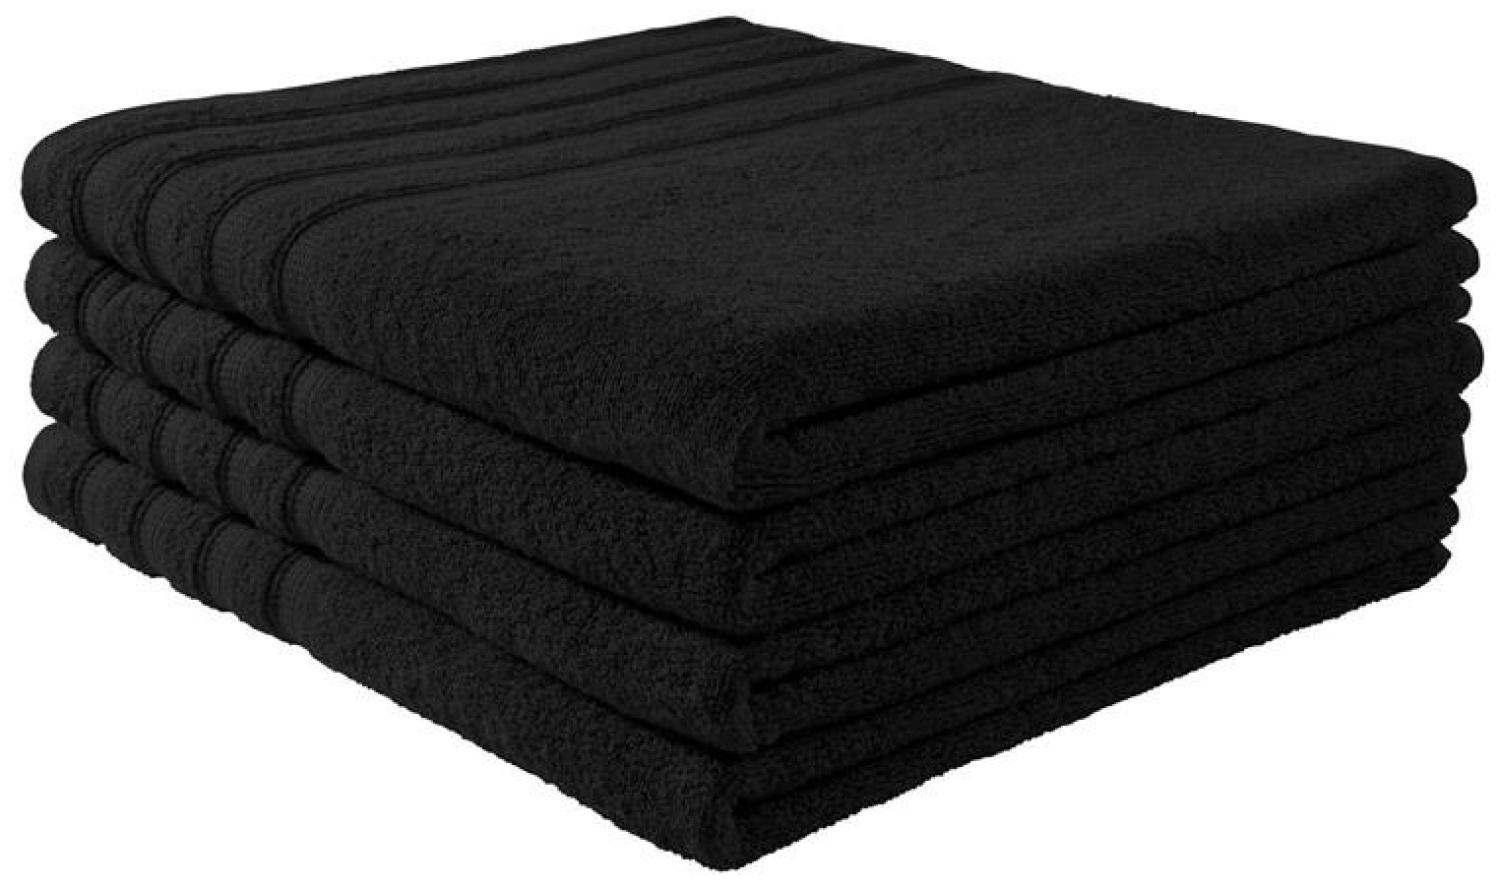 Handtuch Baumwolle Plain Design - Farbe: Schwarz, Größe: 90x200 cm Bild 1